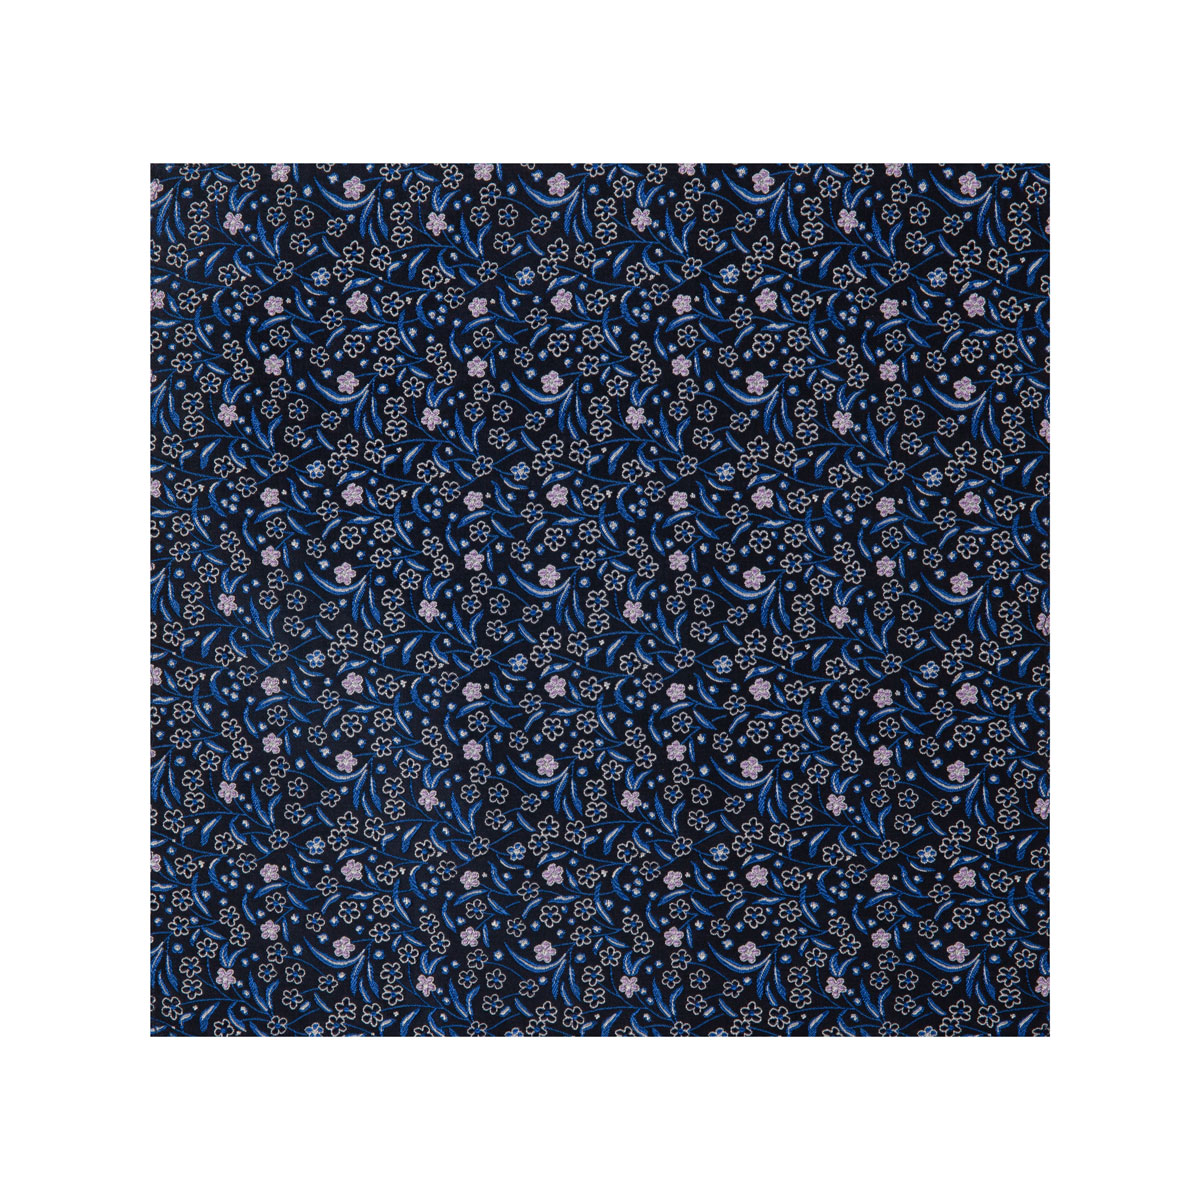 Stoff vom Einstecktuch mit Blütenmuster in dunkelblau